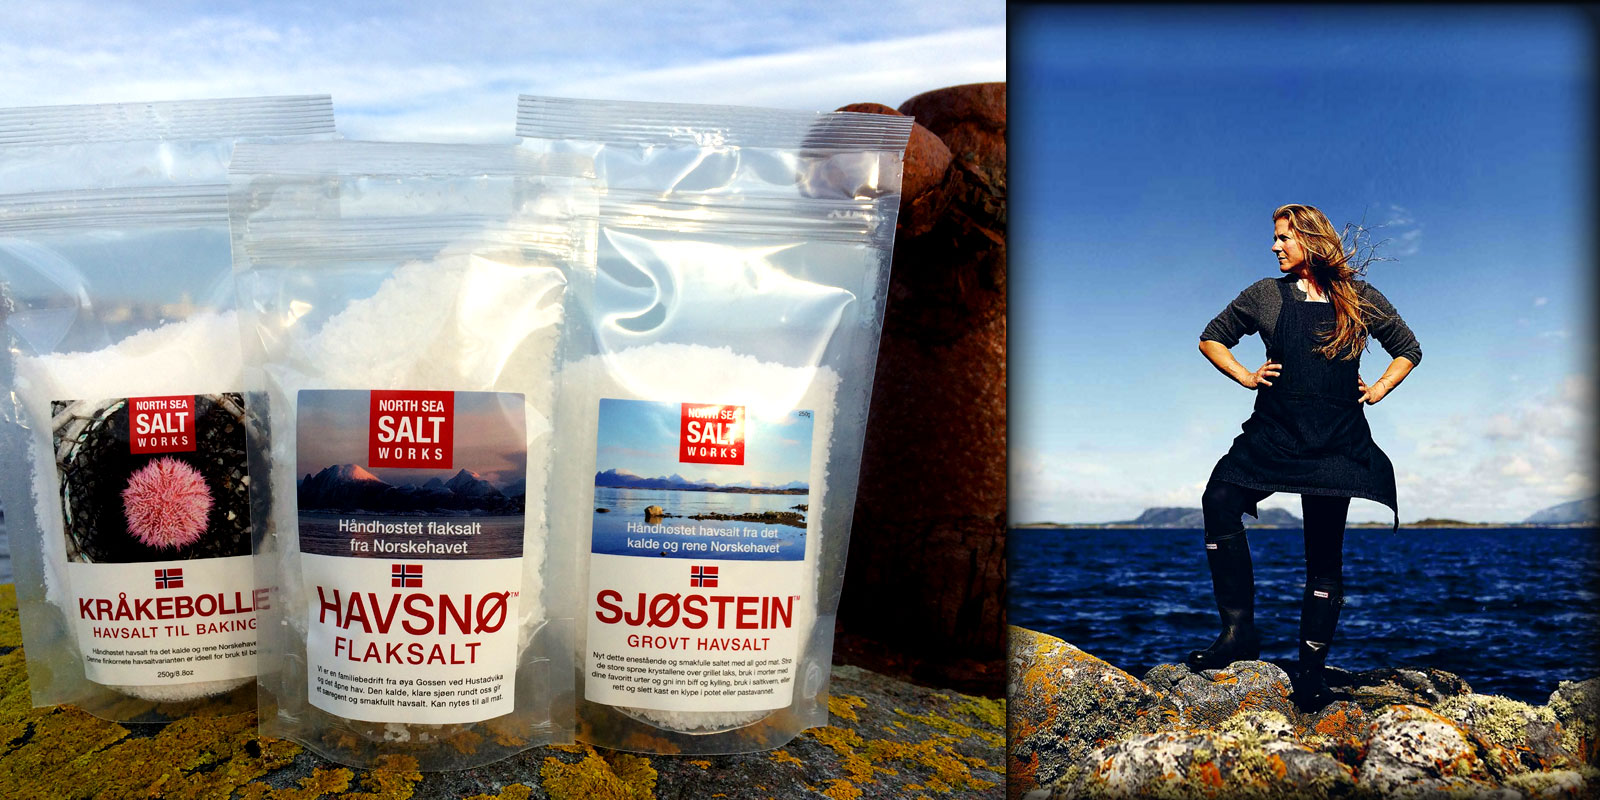 HAVSNO Sal de les salines del Mar del Nord HAVSNO North Sea Salt Works: Experimenta el gust del mar a traves de la puresa del producte i la seva produccio, pura Noruega.